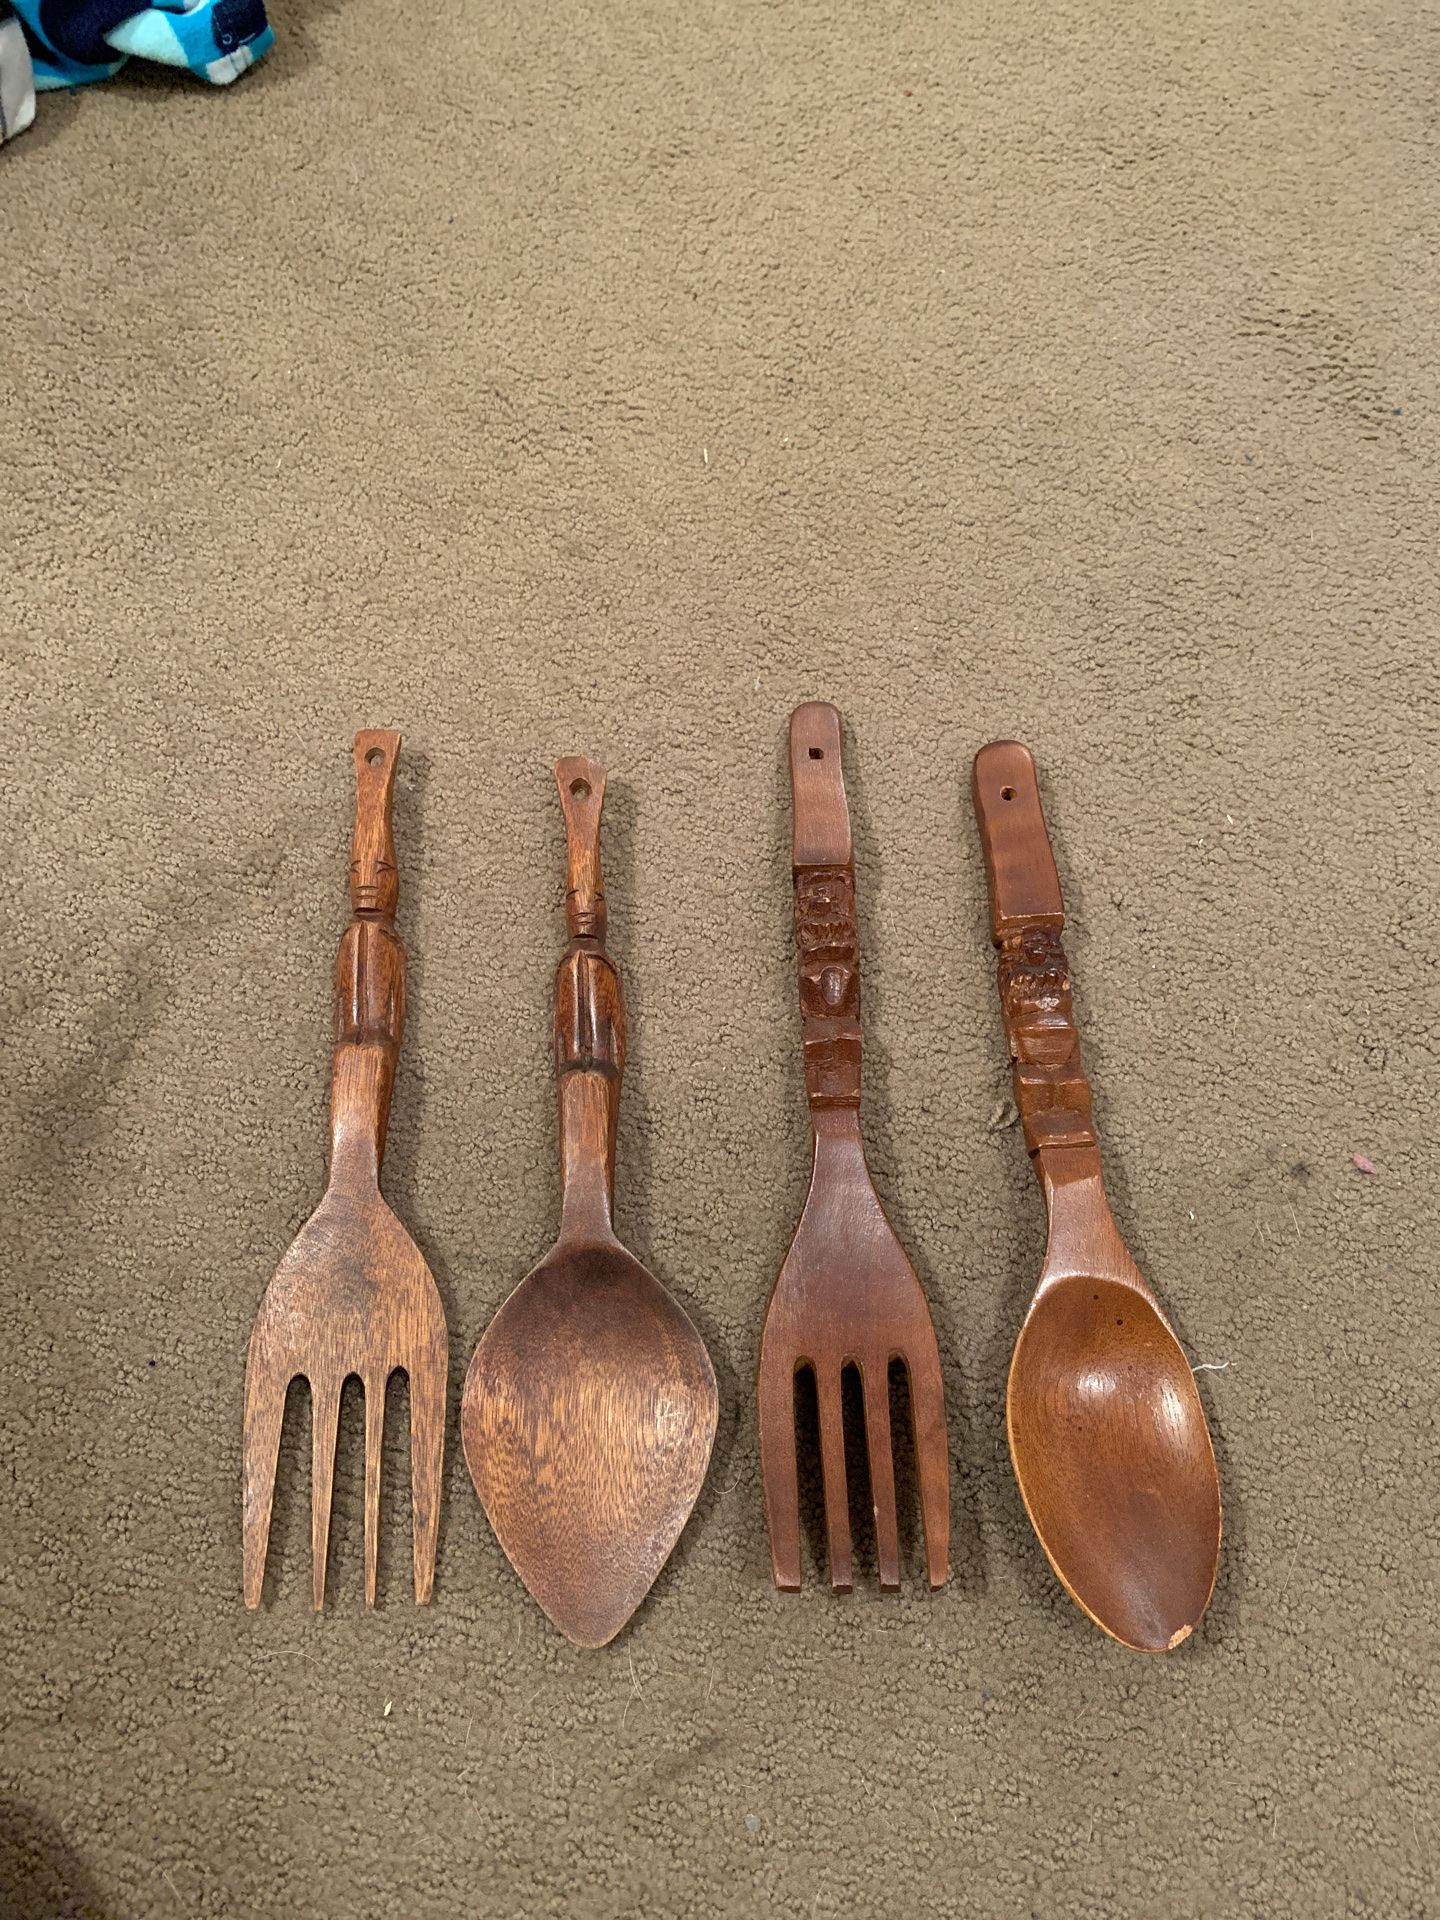 12” Wooden fork ñ Spoon lot of 4